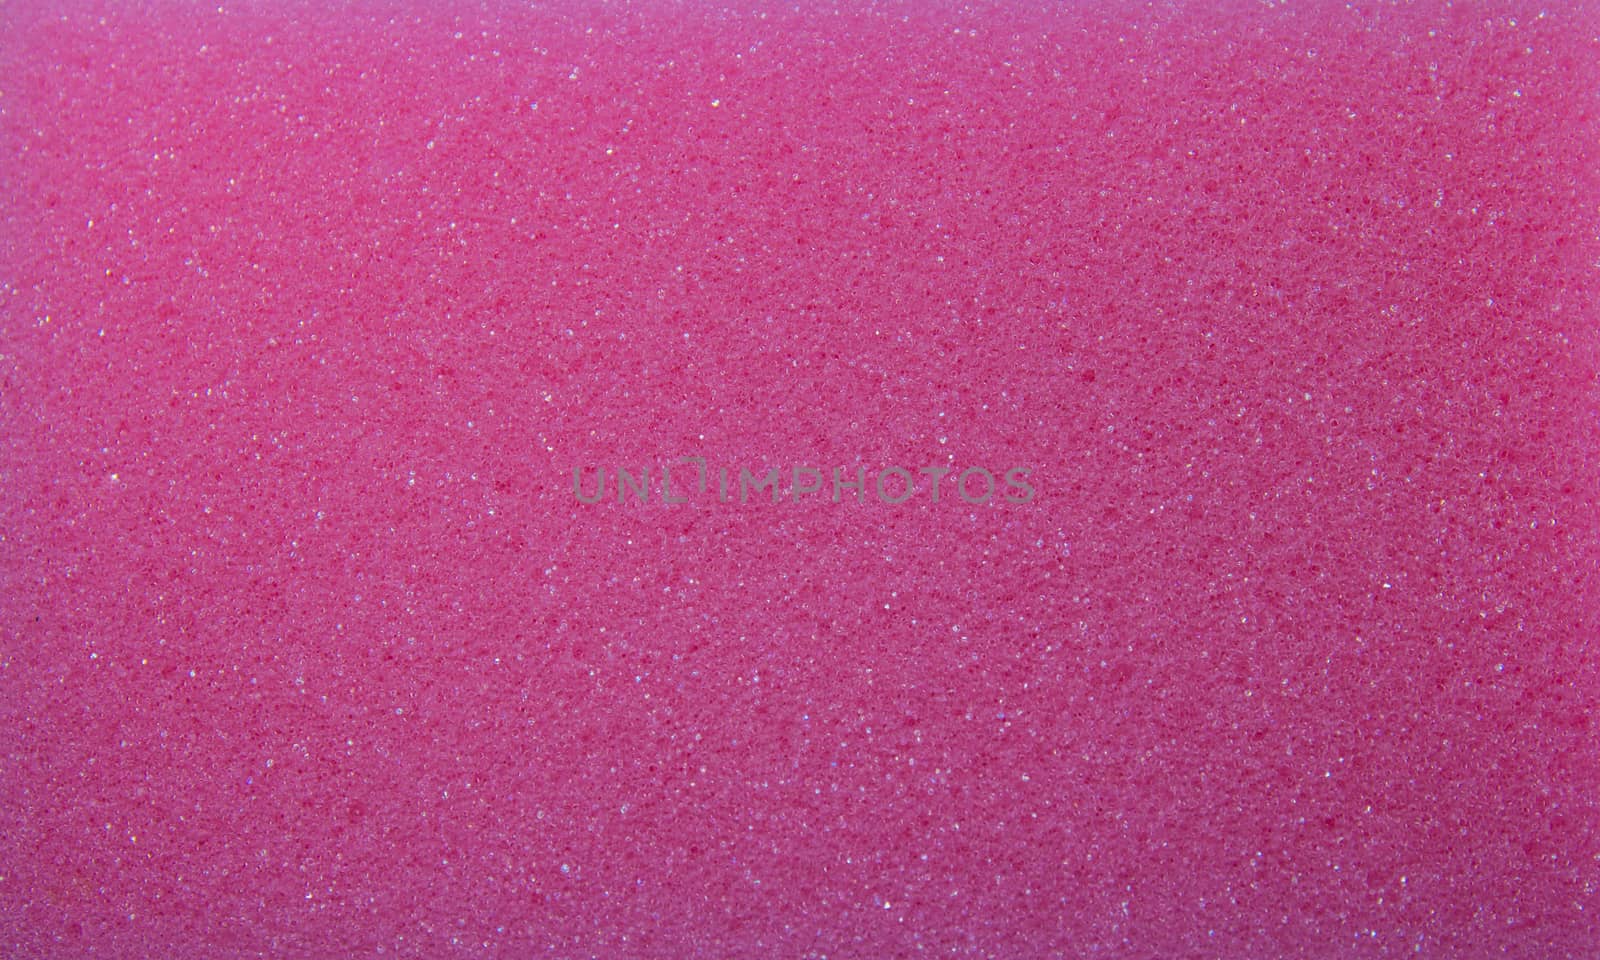 Pink sponge foam texture